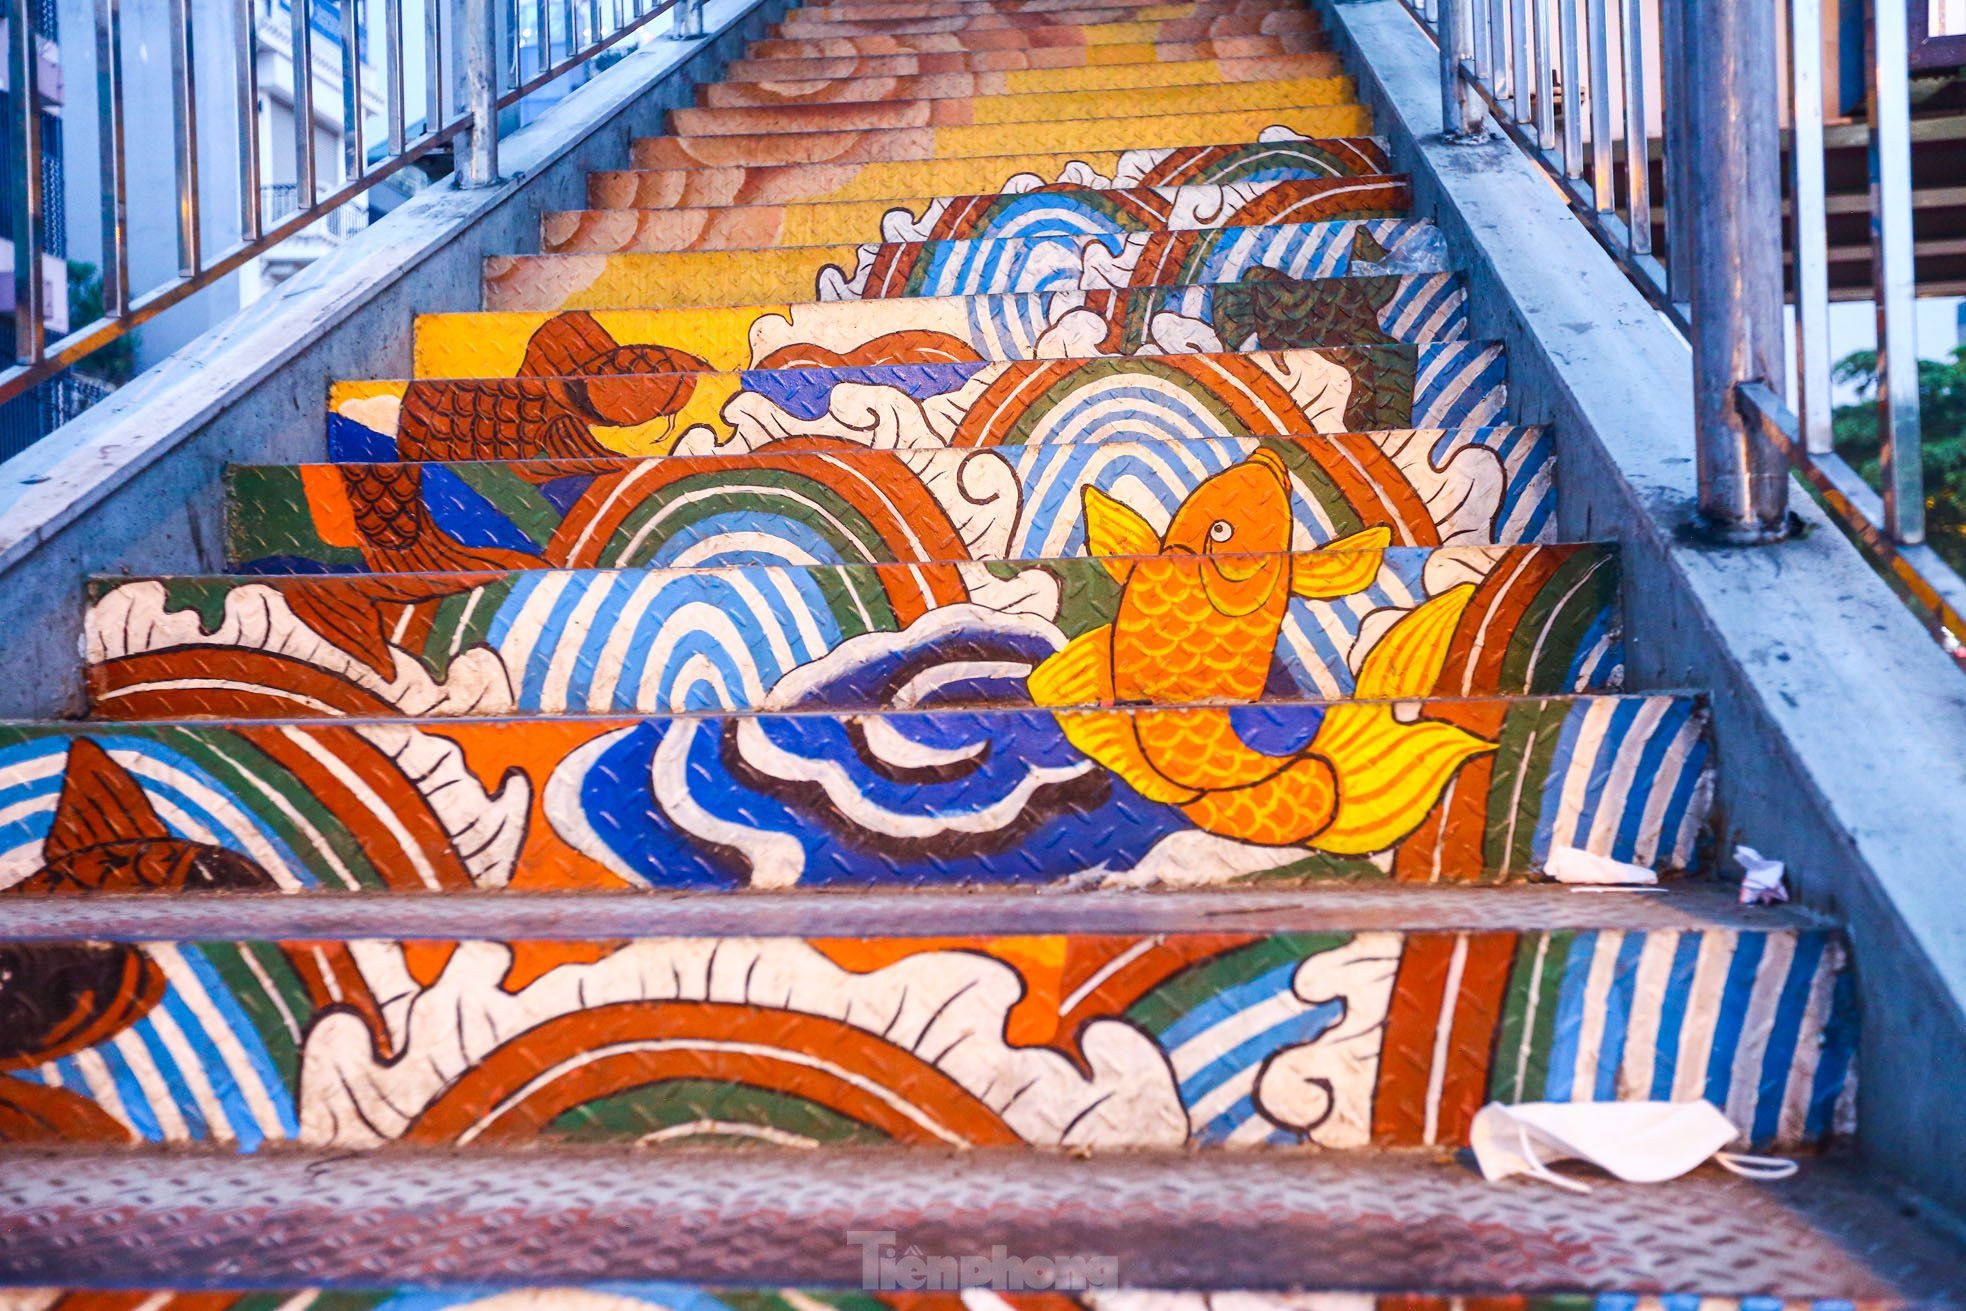 Cầu đi bộ trên phố Trần Nhật Duật (Hoàn Kiếm, Hà Nội) được cải tạo thành dự nghệ thuật công cộng. Dự án này vừa đáp ứng nhu cầu thắp sáng cầu đi bộ, vừa khiến khu vực này trở nên sinh động hơn. Khu vực chân cầu thang đi bộ được thiết kế từ hình ảnh Cá chép vượt Vũ Môn .